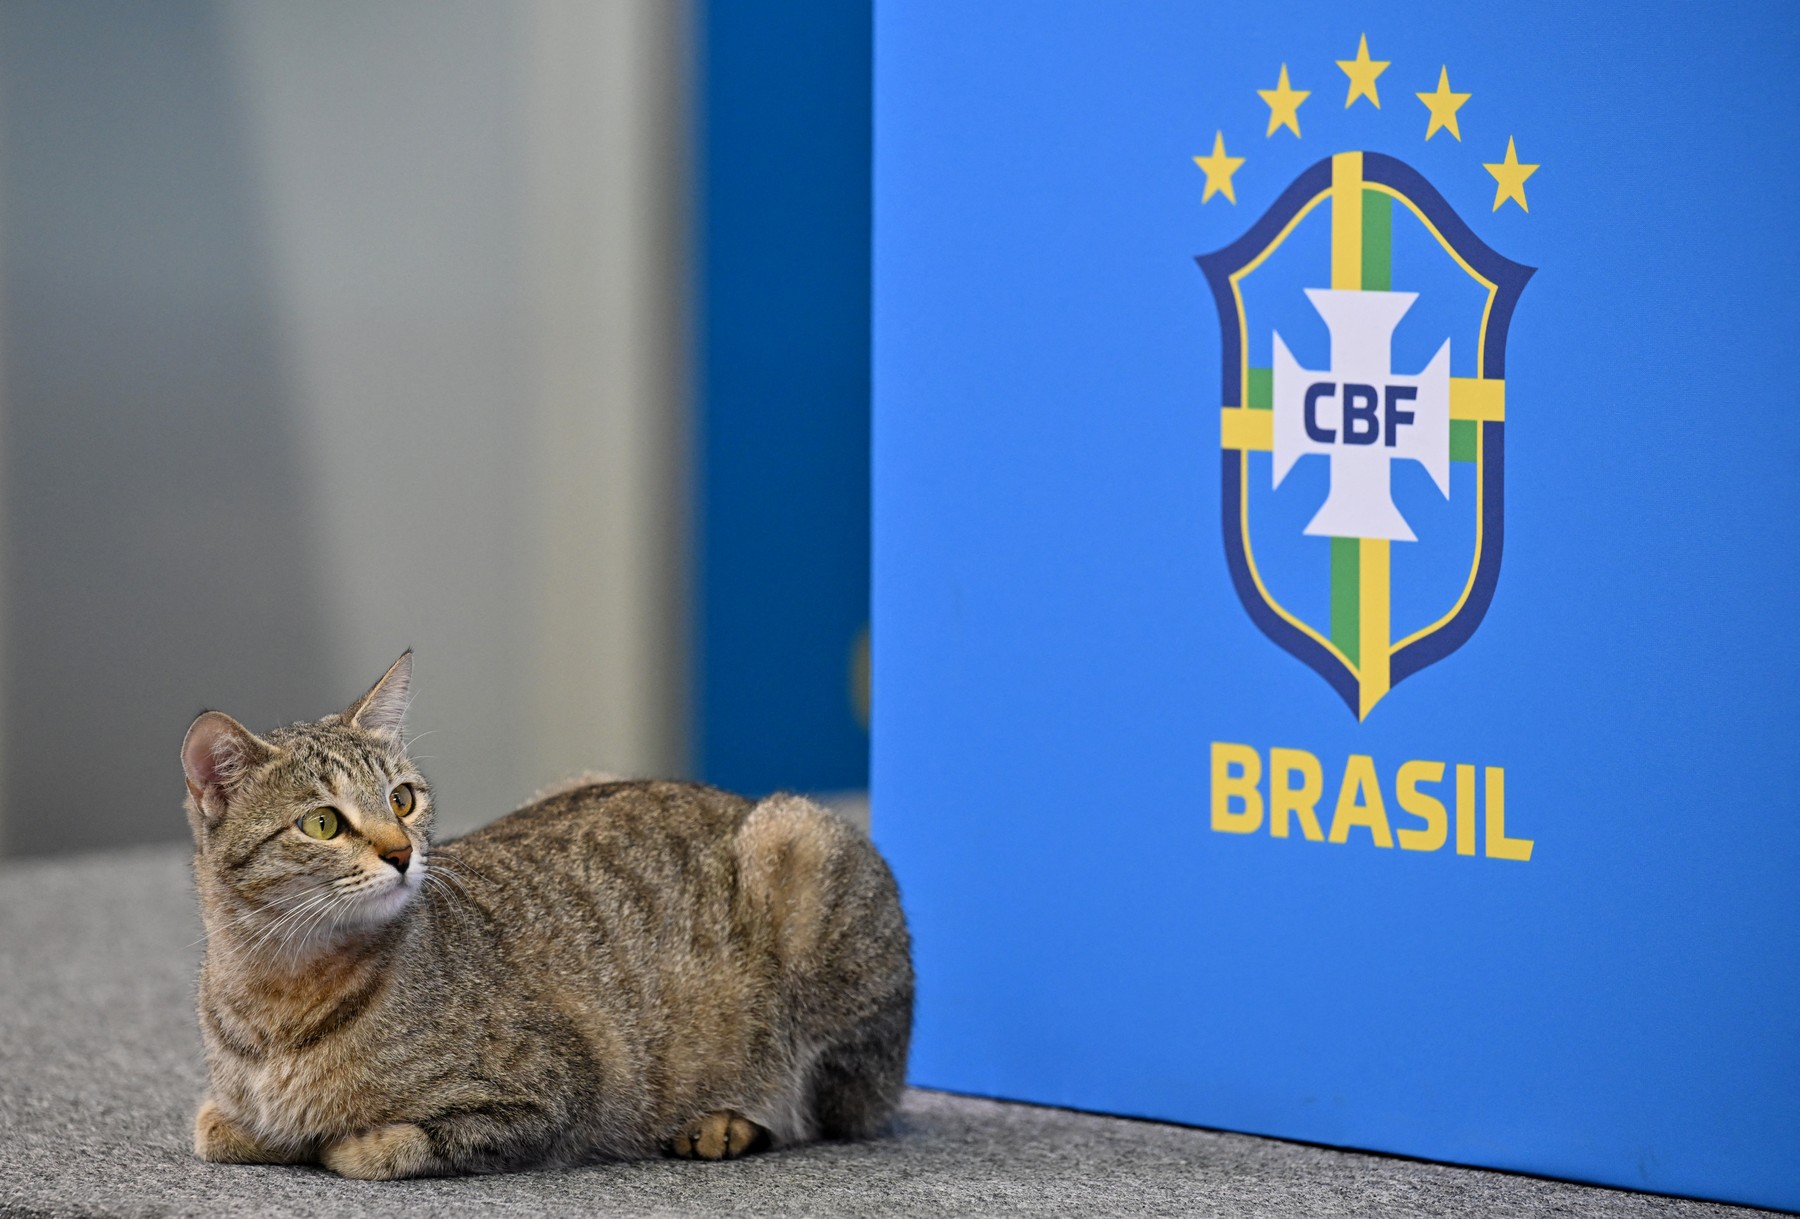 Brazilia, lovită de ”blestemul pisicii”. Reacțiile internauților sunt savuroase: ”Pisica-Brazilia 1-0”